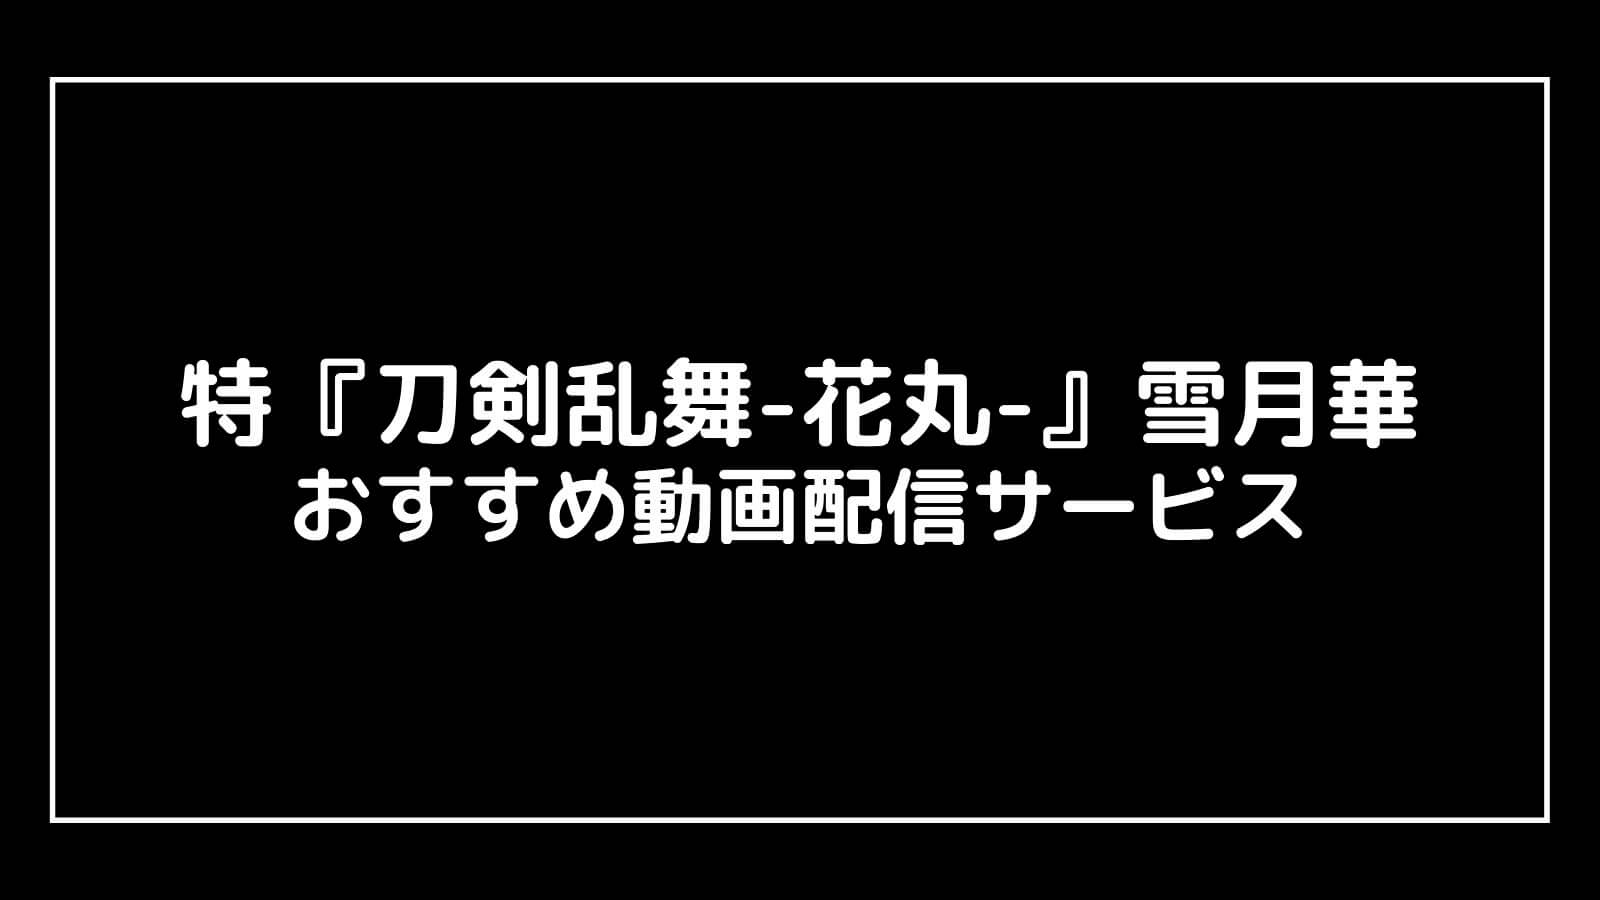 特『刀剣乱舞-花丸-』〜雪月華〜映画を無料フル視聴できる動画配信サブスクまとめ